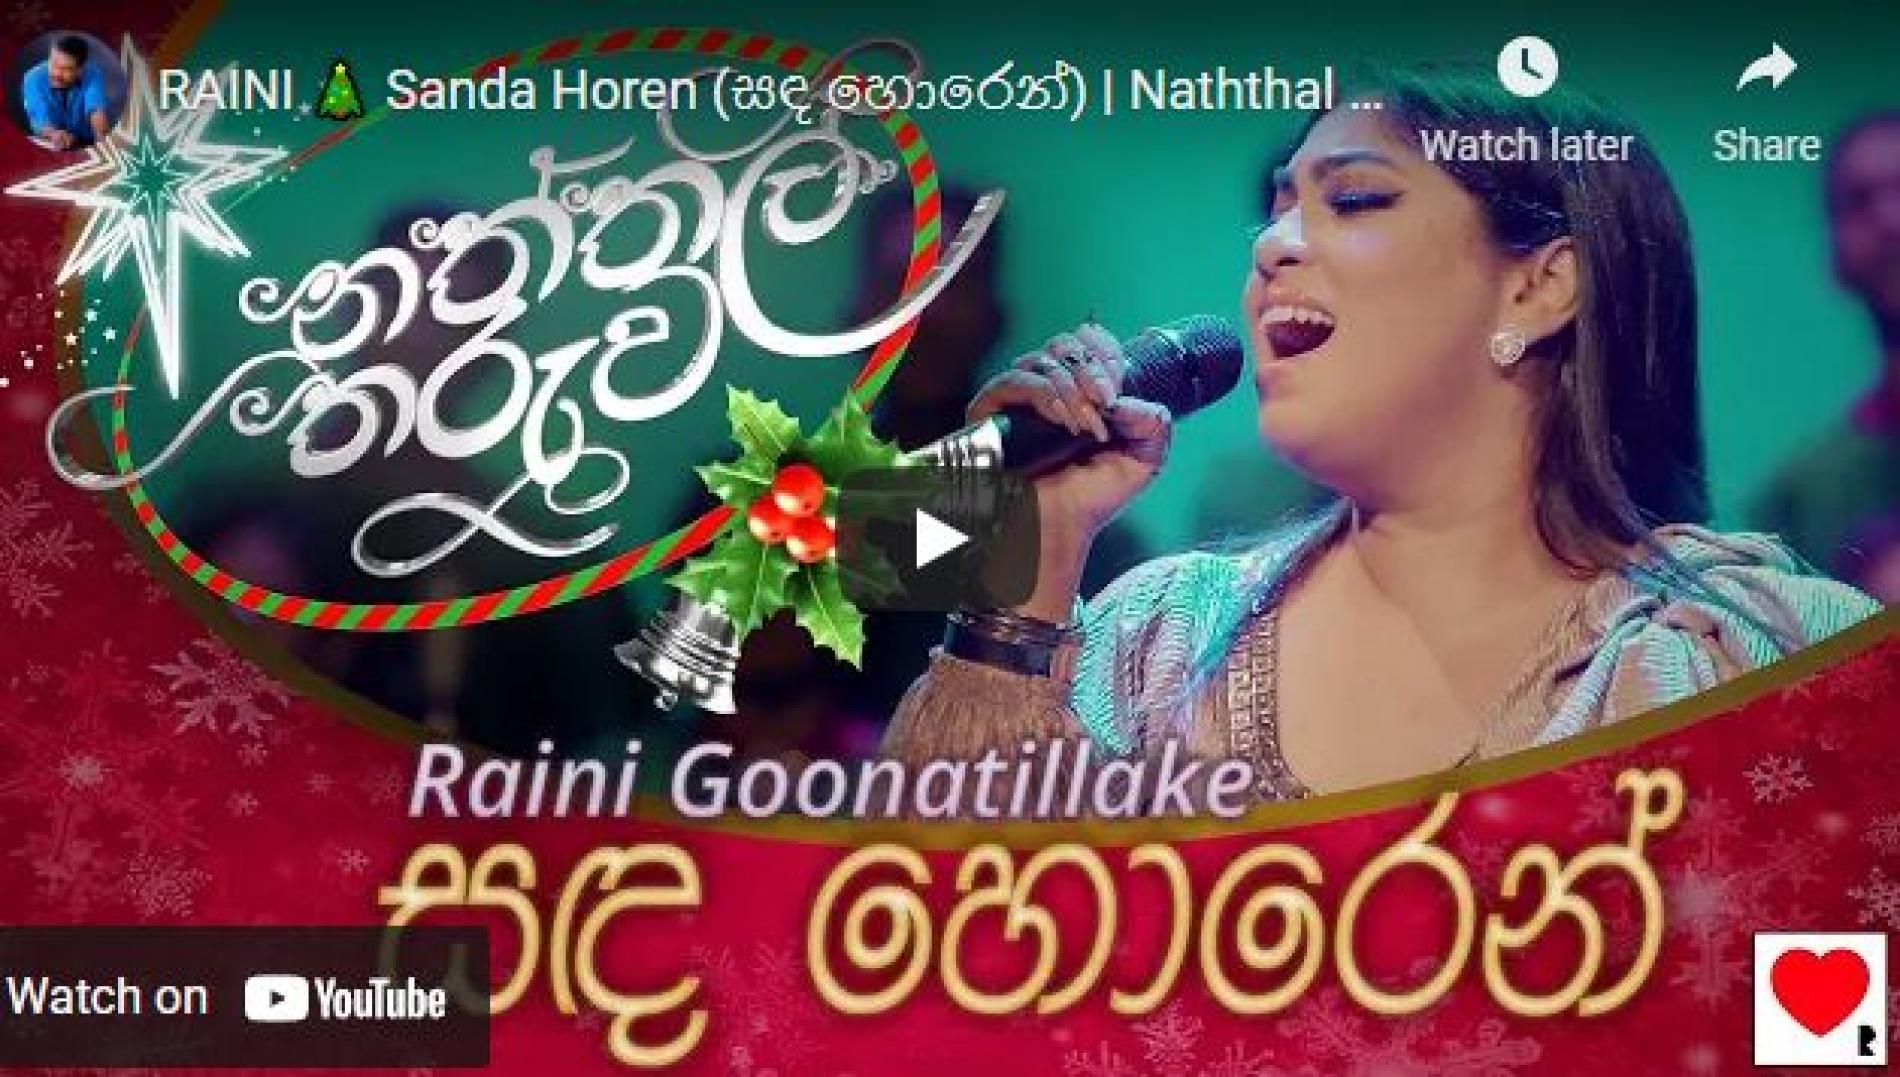 New Music : RAINI 🎄 Sanda Horen (සඳ හොරෙන්) | Naththal Tharuwa